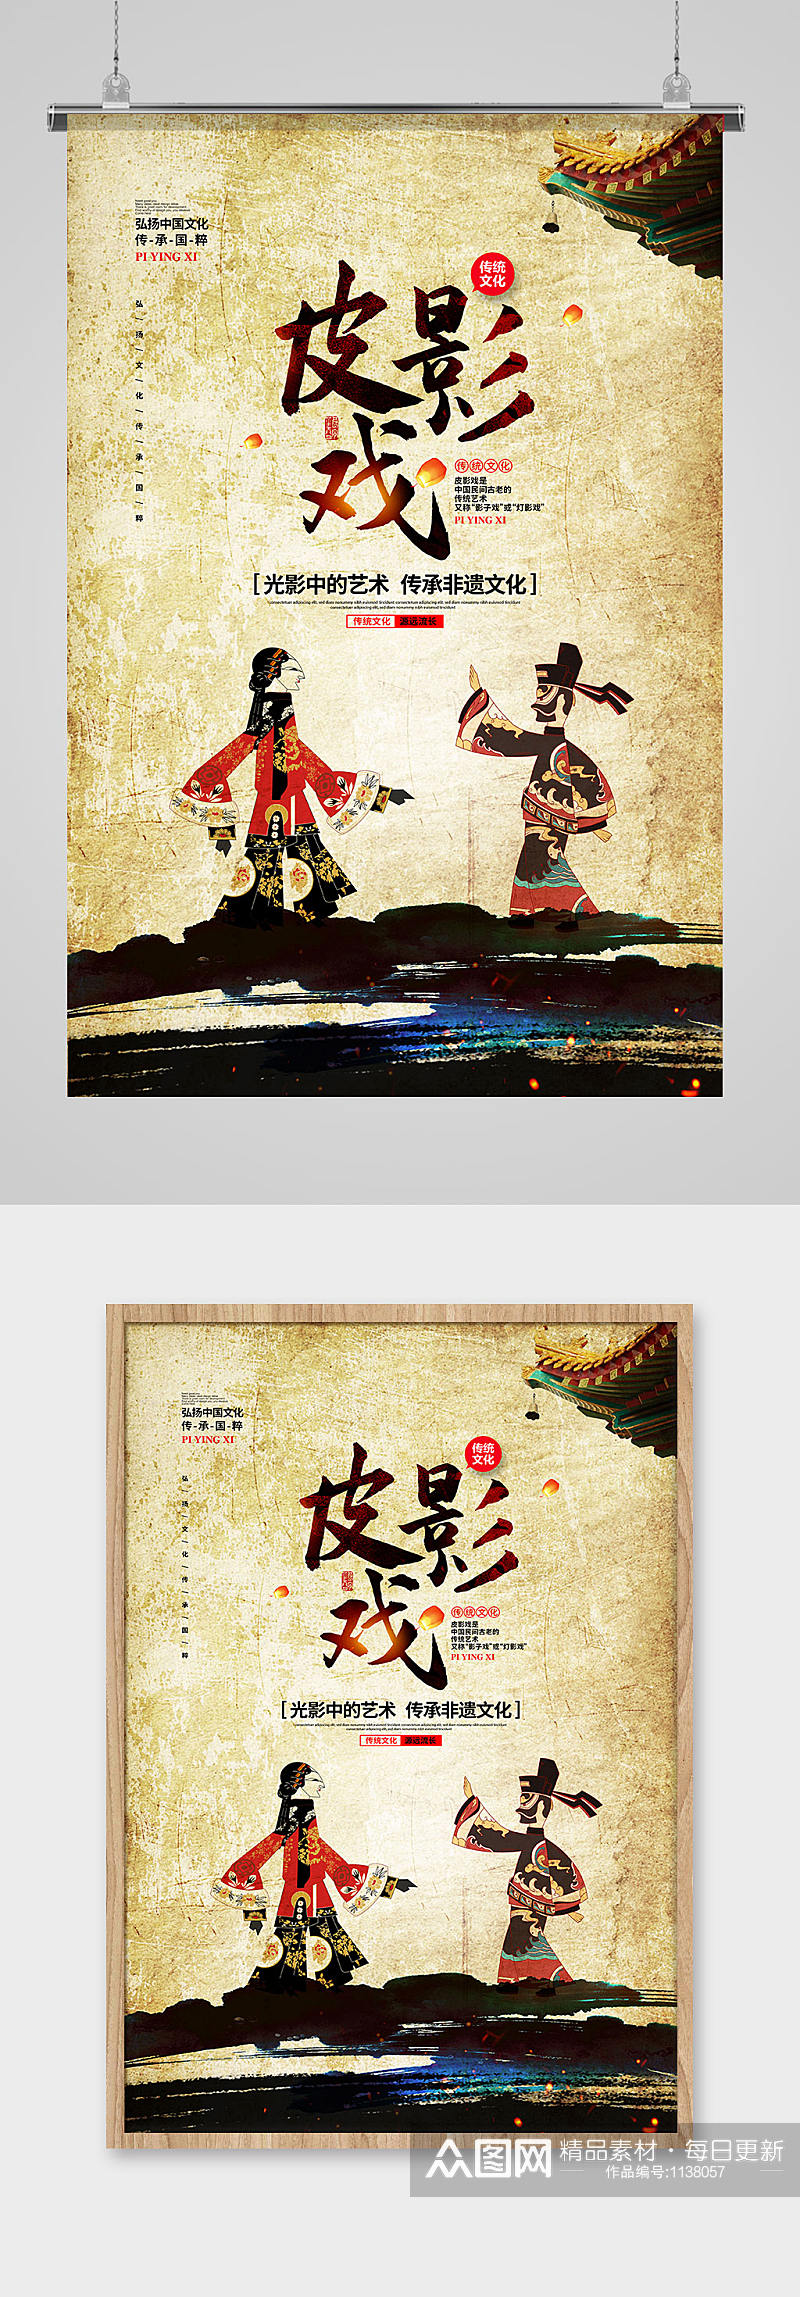 中国风简约传统文化皮影戏宣传设计素材